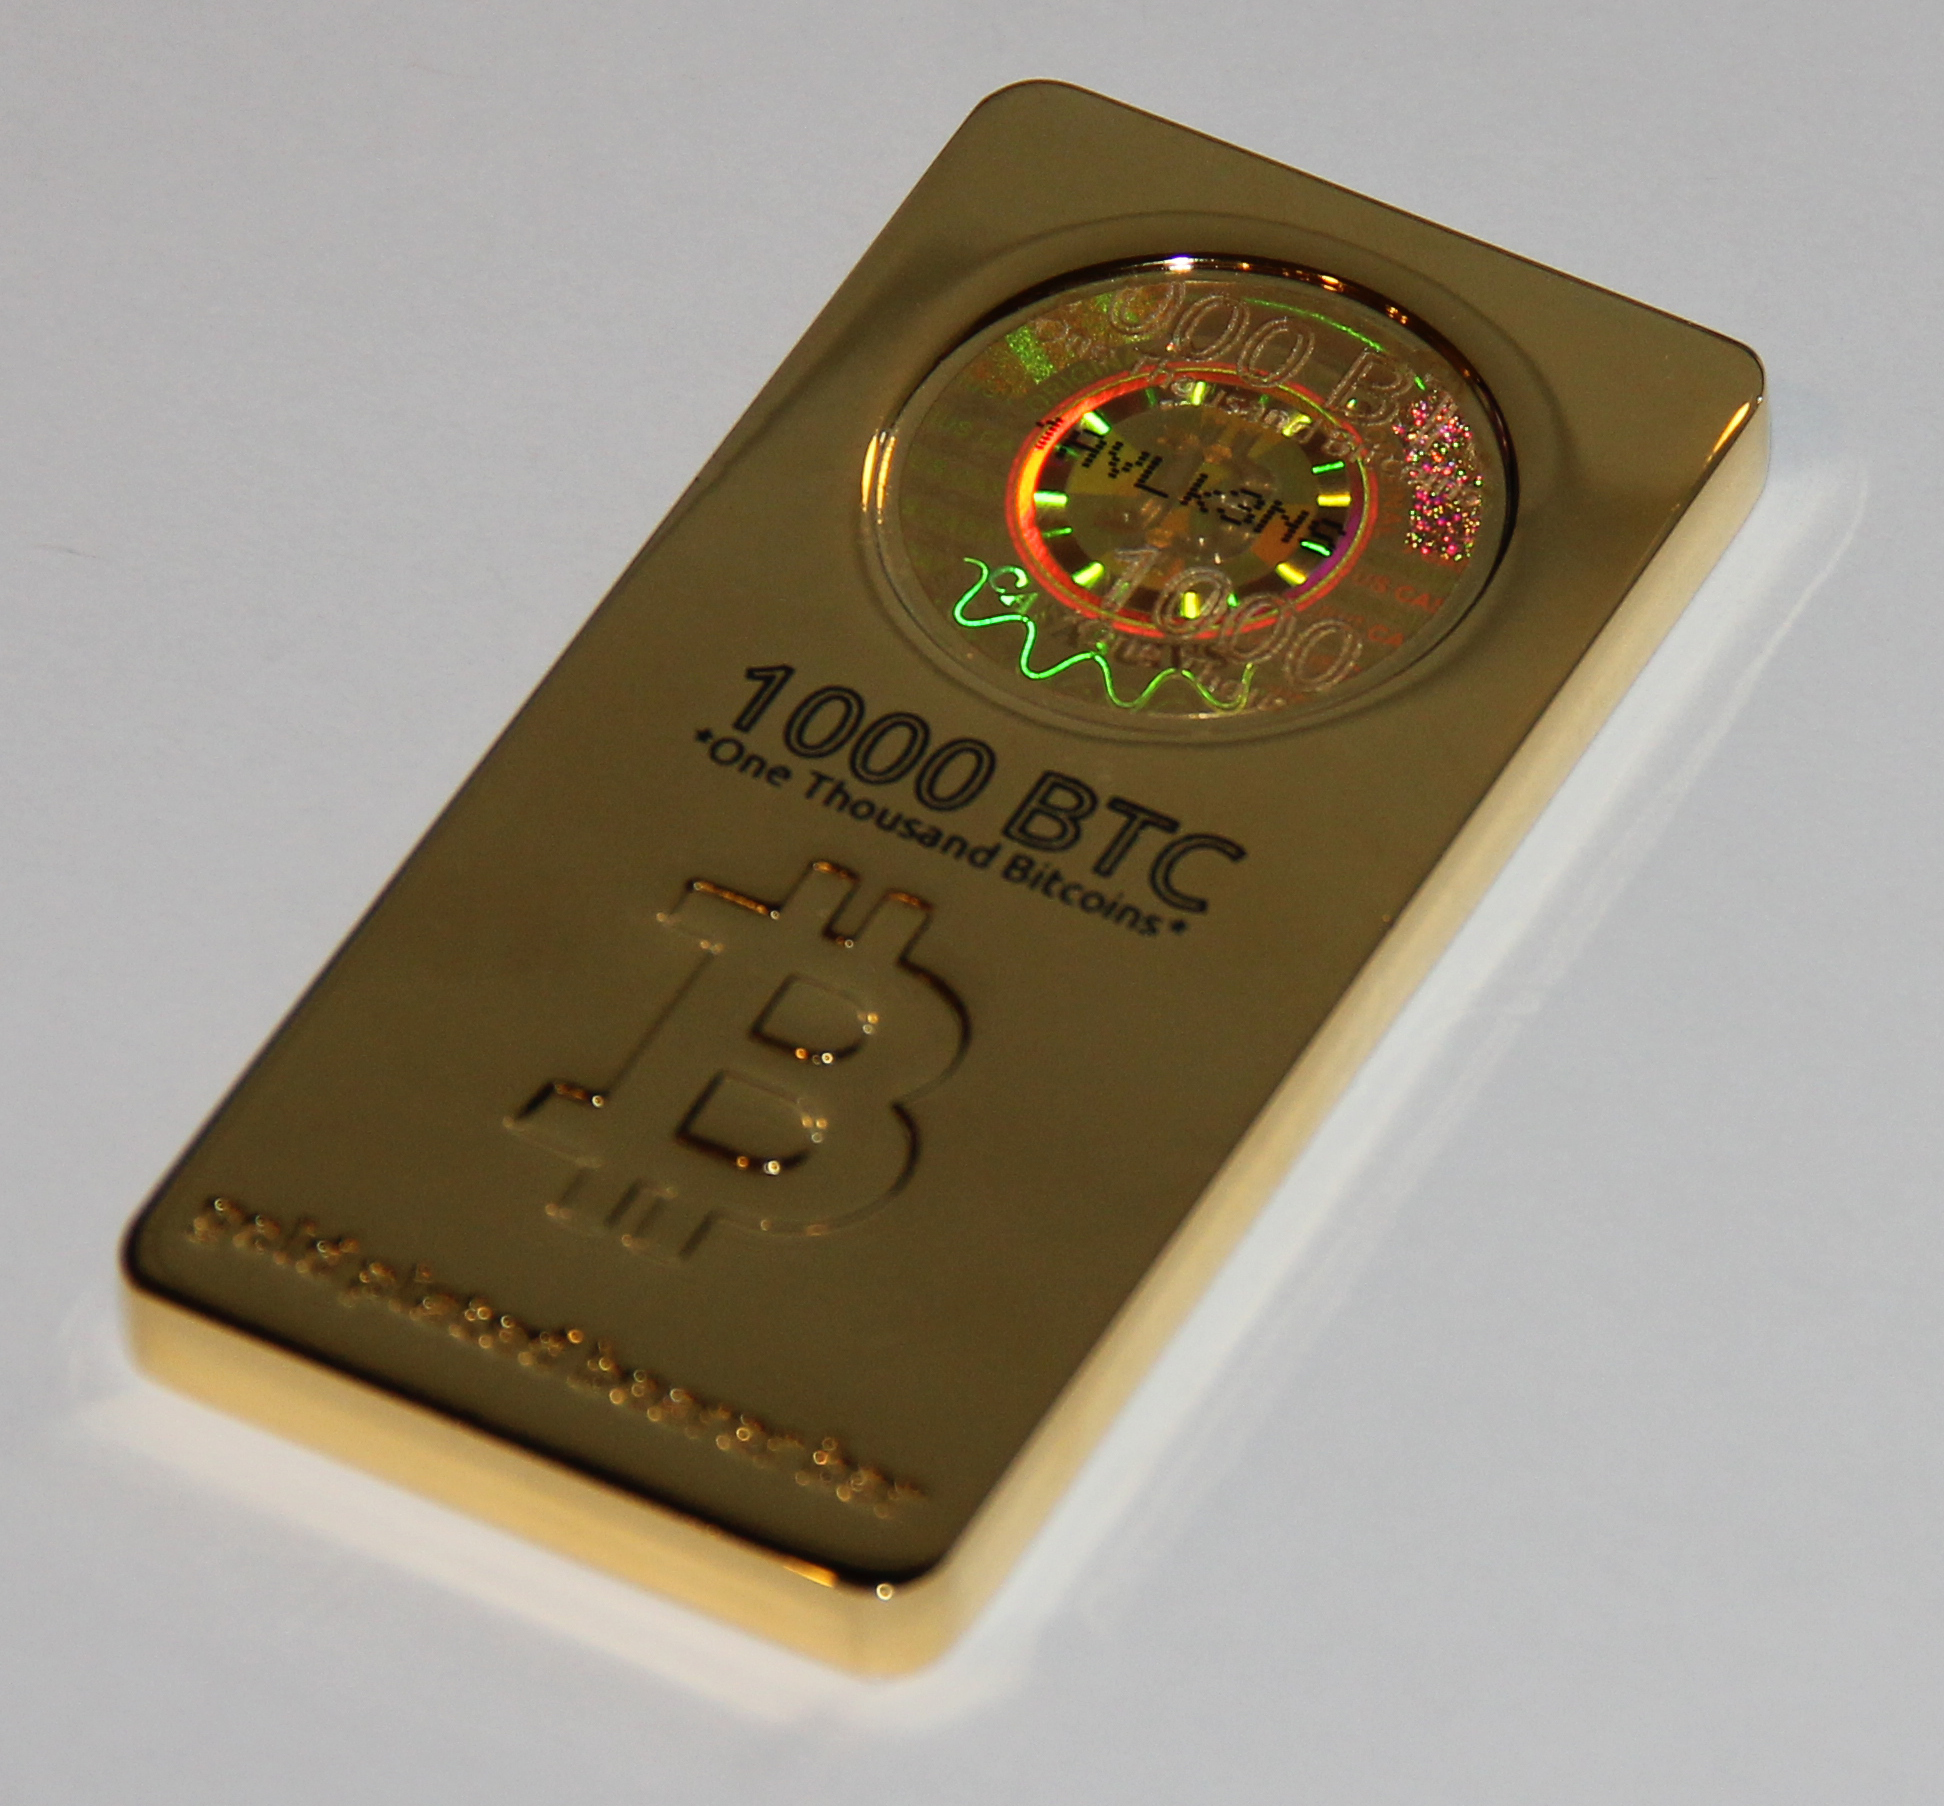 1000 btc gold bar.jpg